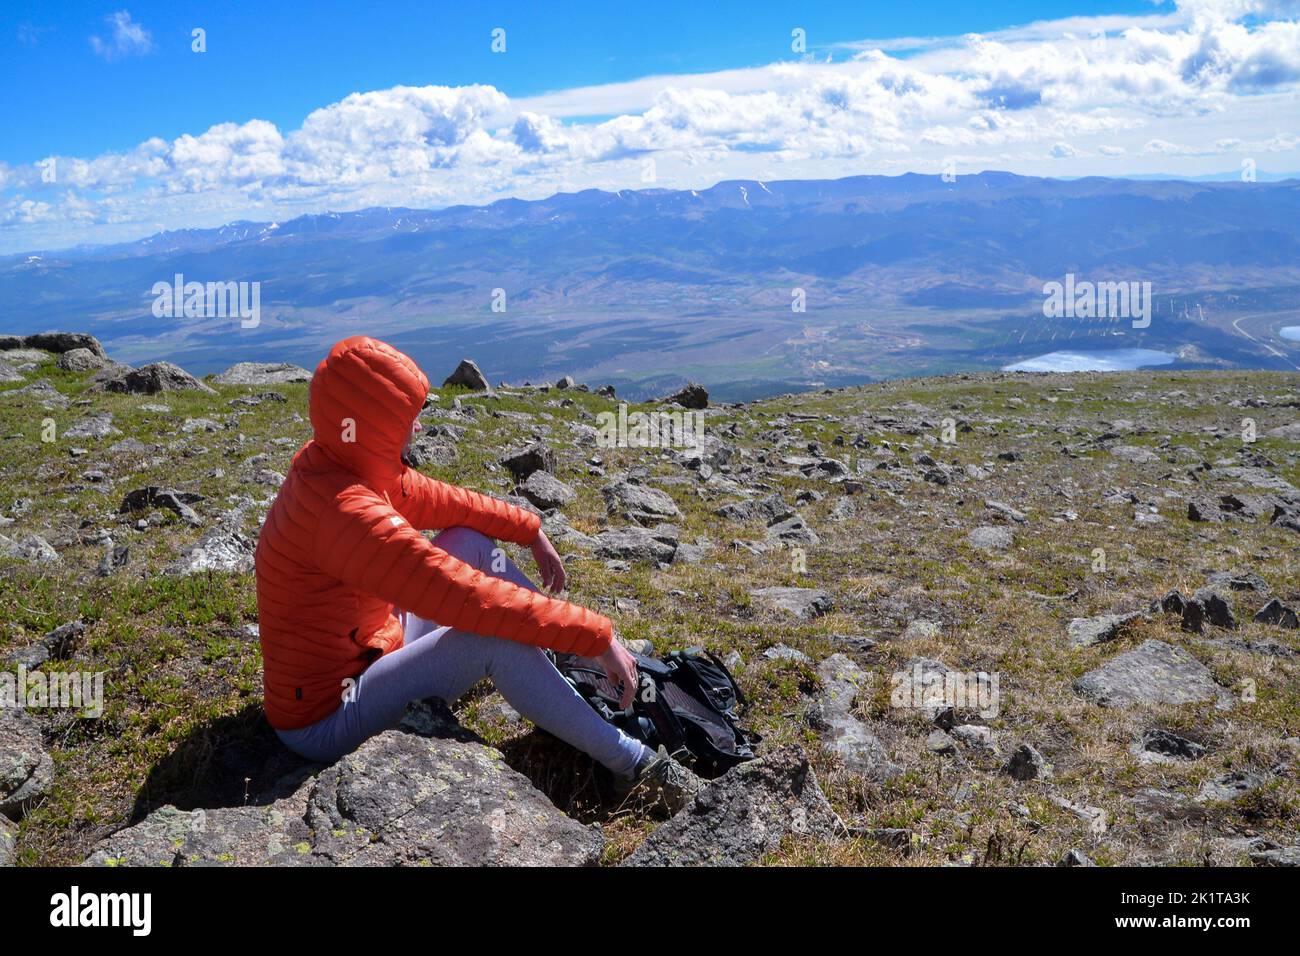 Eine Frau in einer orangefarbenen Jacke mit Kapuze sitzt für eine Pause mit Blick auf die Berge nahe der Spitze des Mount Elbert, dem höchsten Gipfel in Colorado USA Stockfoto